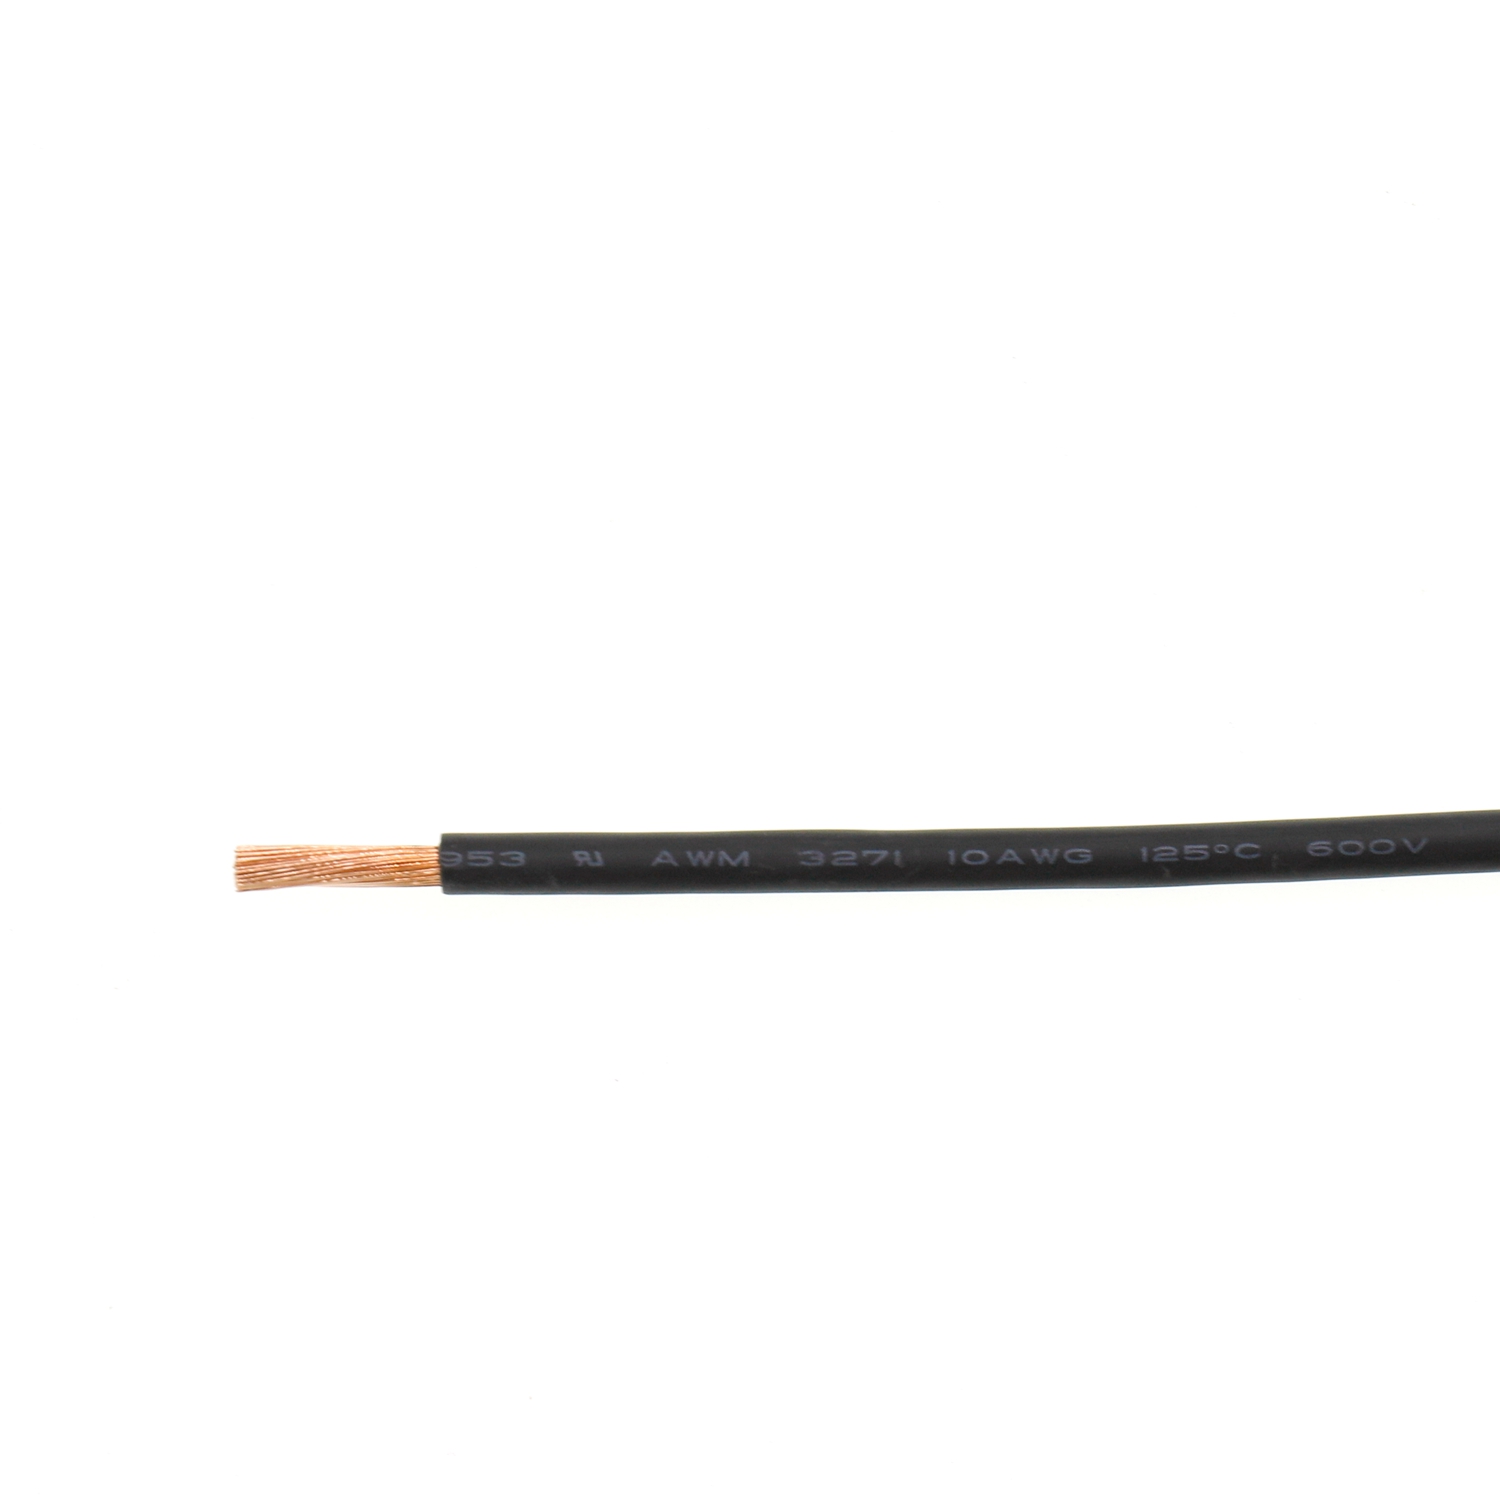 Cable de conexión de cobre desnudo UL3271 10AWG Cable de bajo humo UL AWM